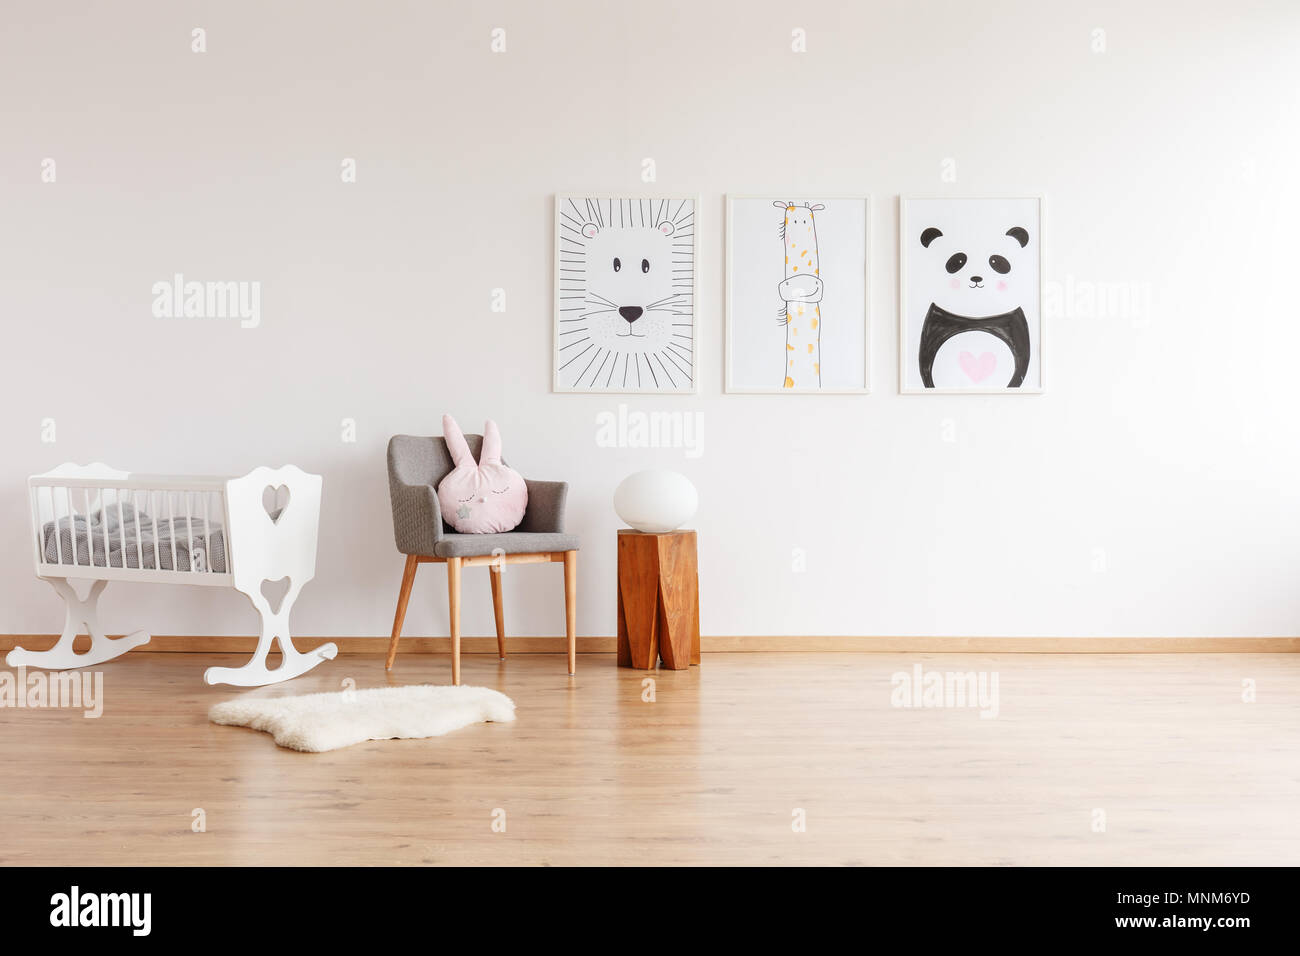 Dessins sur mur blanc gris au-dessus de chaise avec oreiller et banc de bois dans la chambre de bébé avec berceau blanc et tapis Banque D'Images